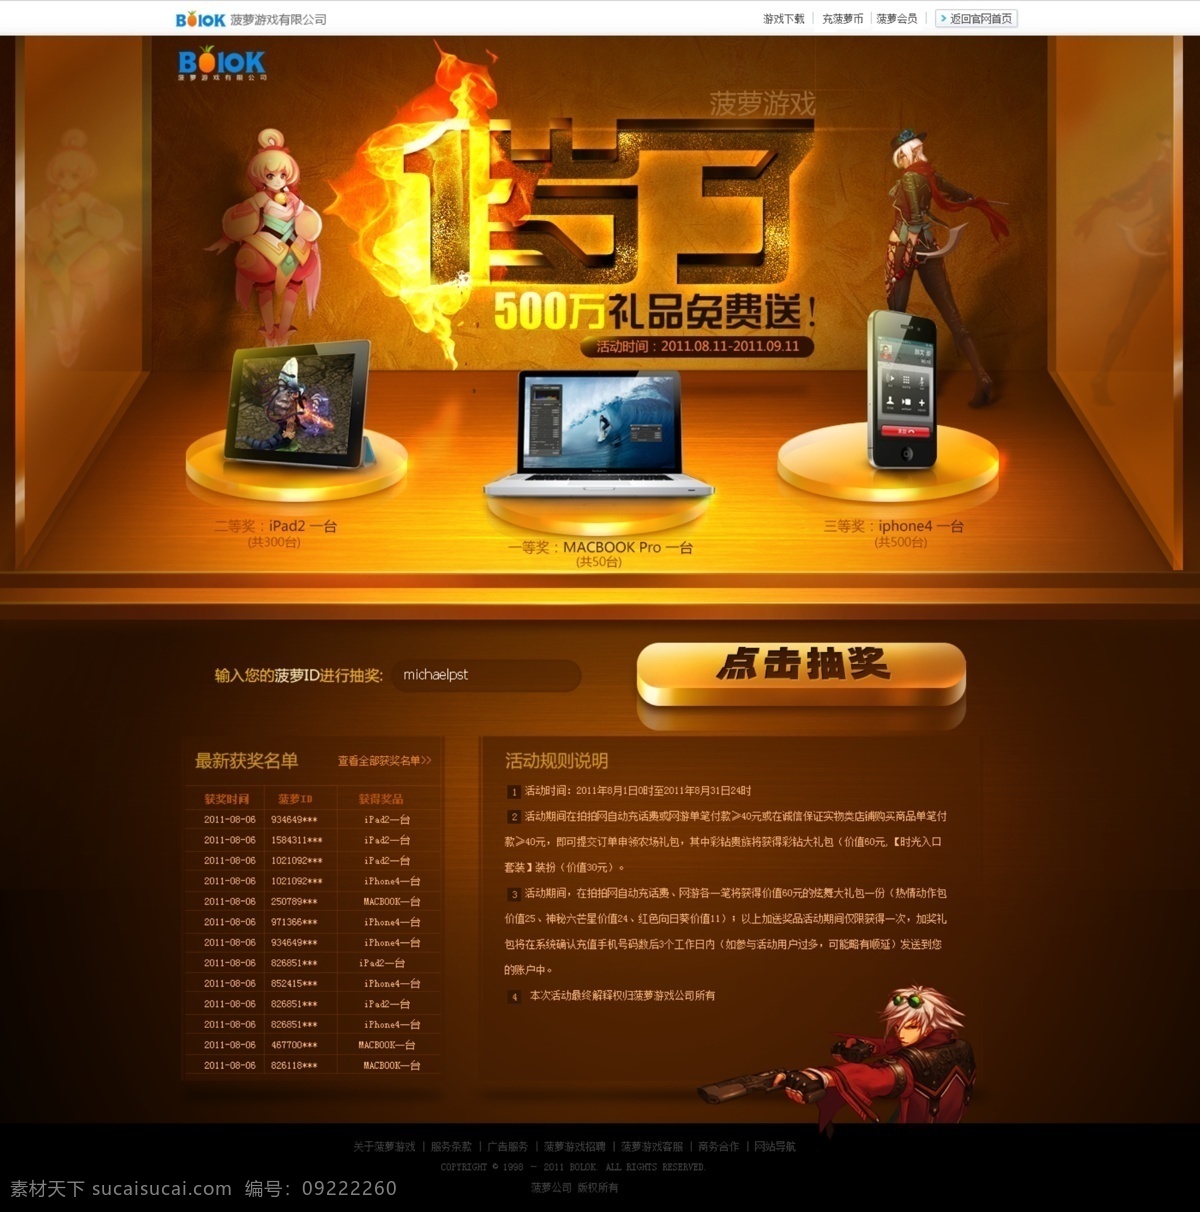 游戏网页设计 游戏页面 游戏 国外 网页设计 游戏专题 游戏素材 游戏海报 游戏人物 游戏元素 移动界面设计 游戏界面 黑色